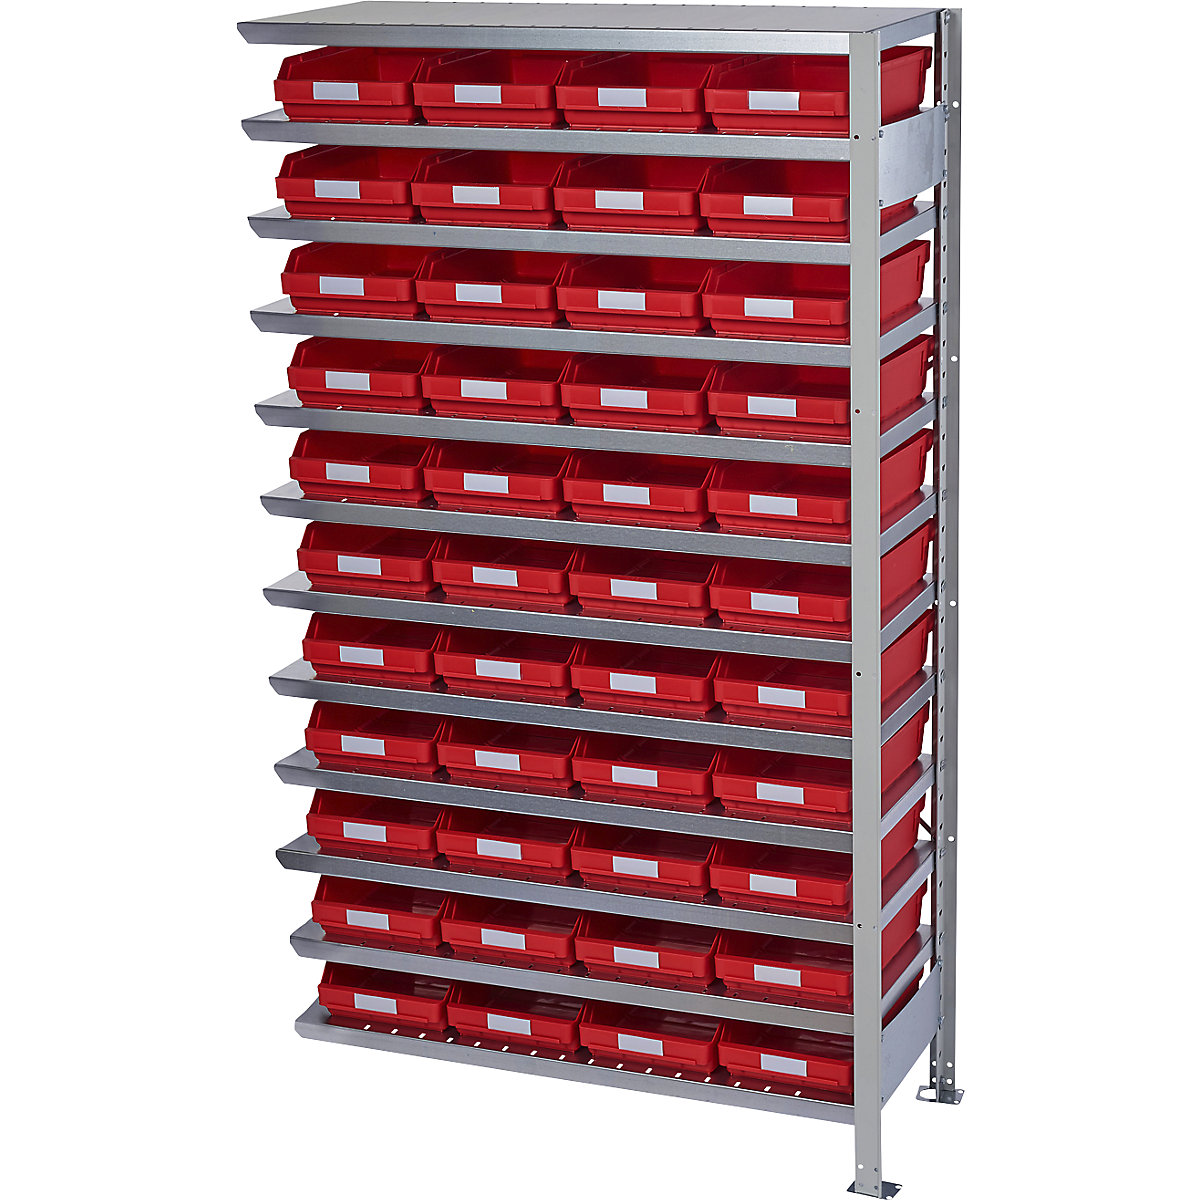 Összedugaszolós állvány dobozokkal – STEMO, állványmagasság 1790 mm, bővítő állvány, 500 mm mély, 44 piros doboz-25